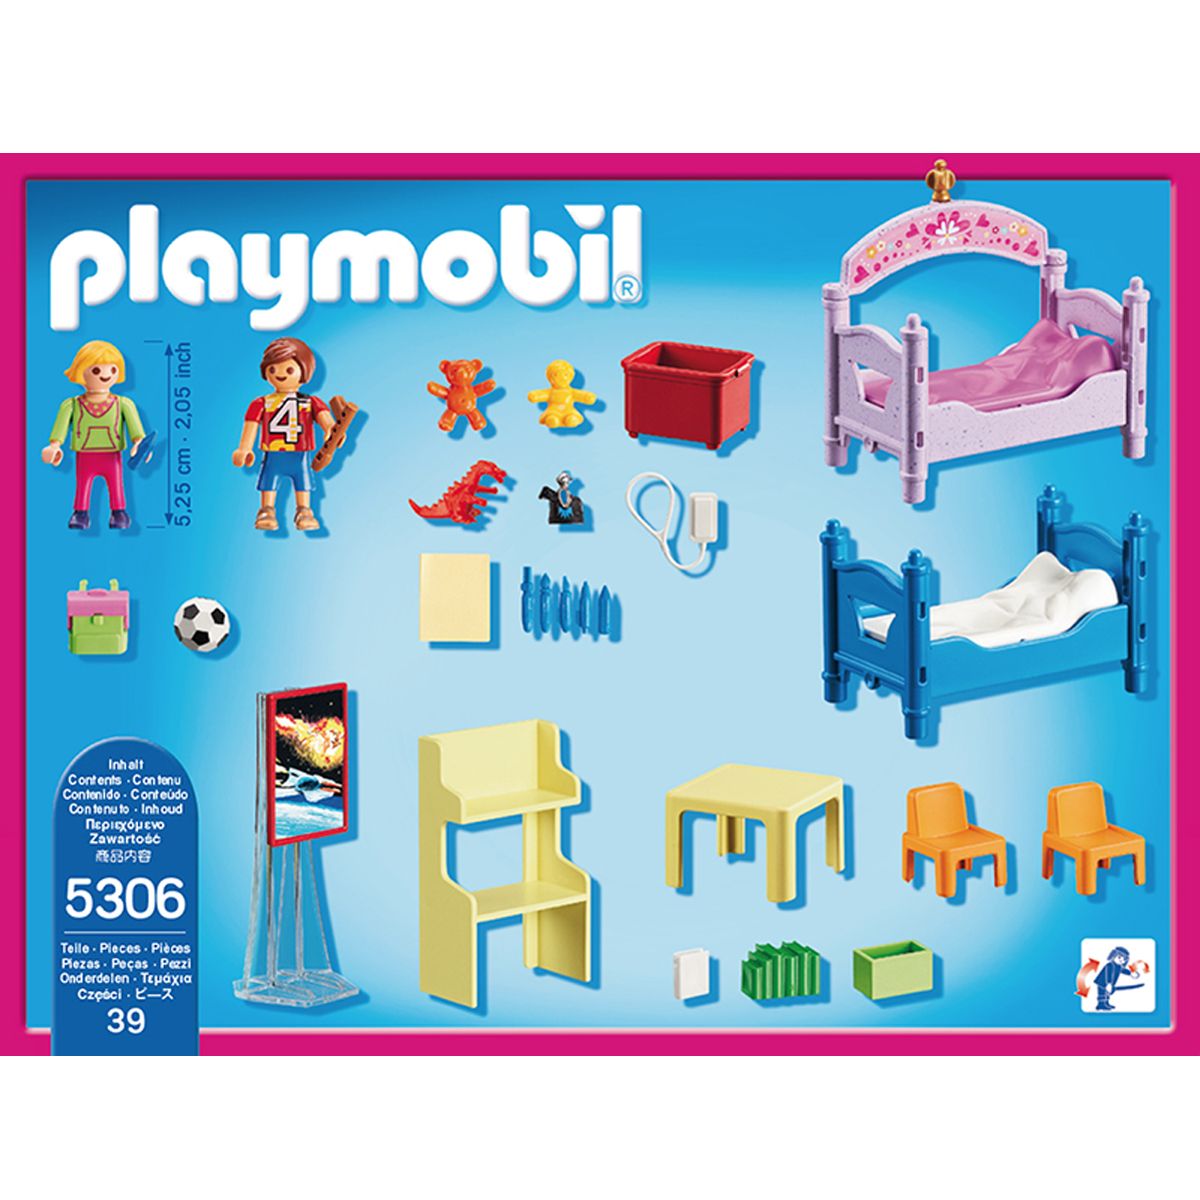 5306 playmobil